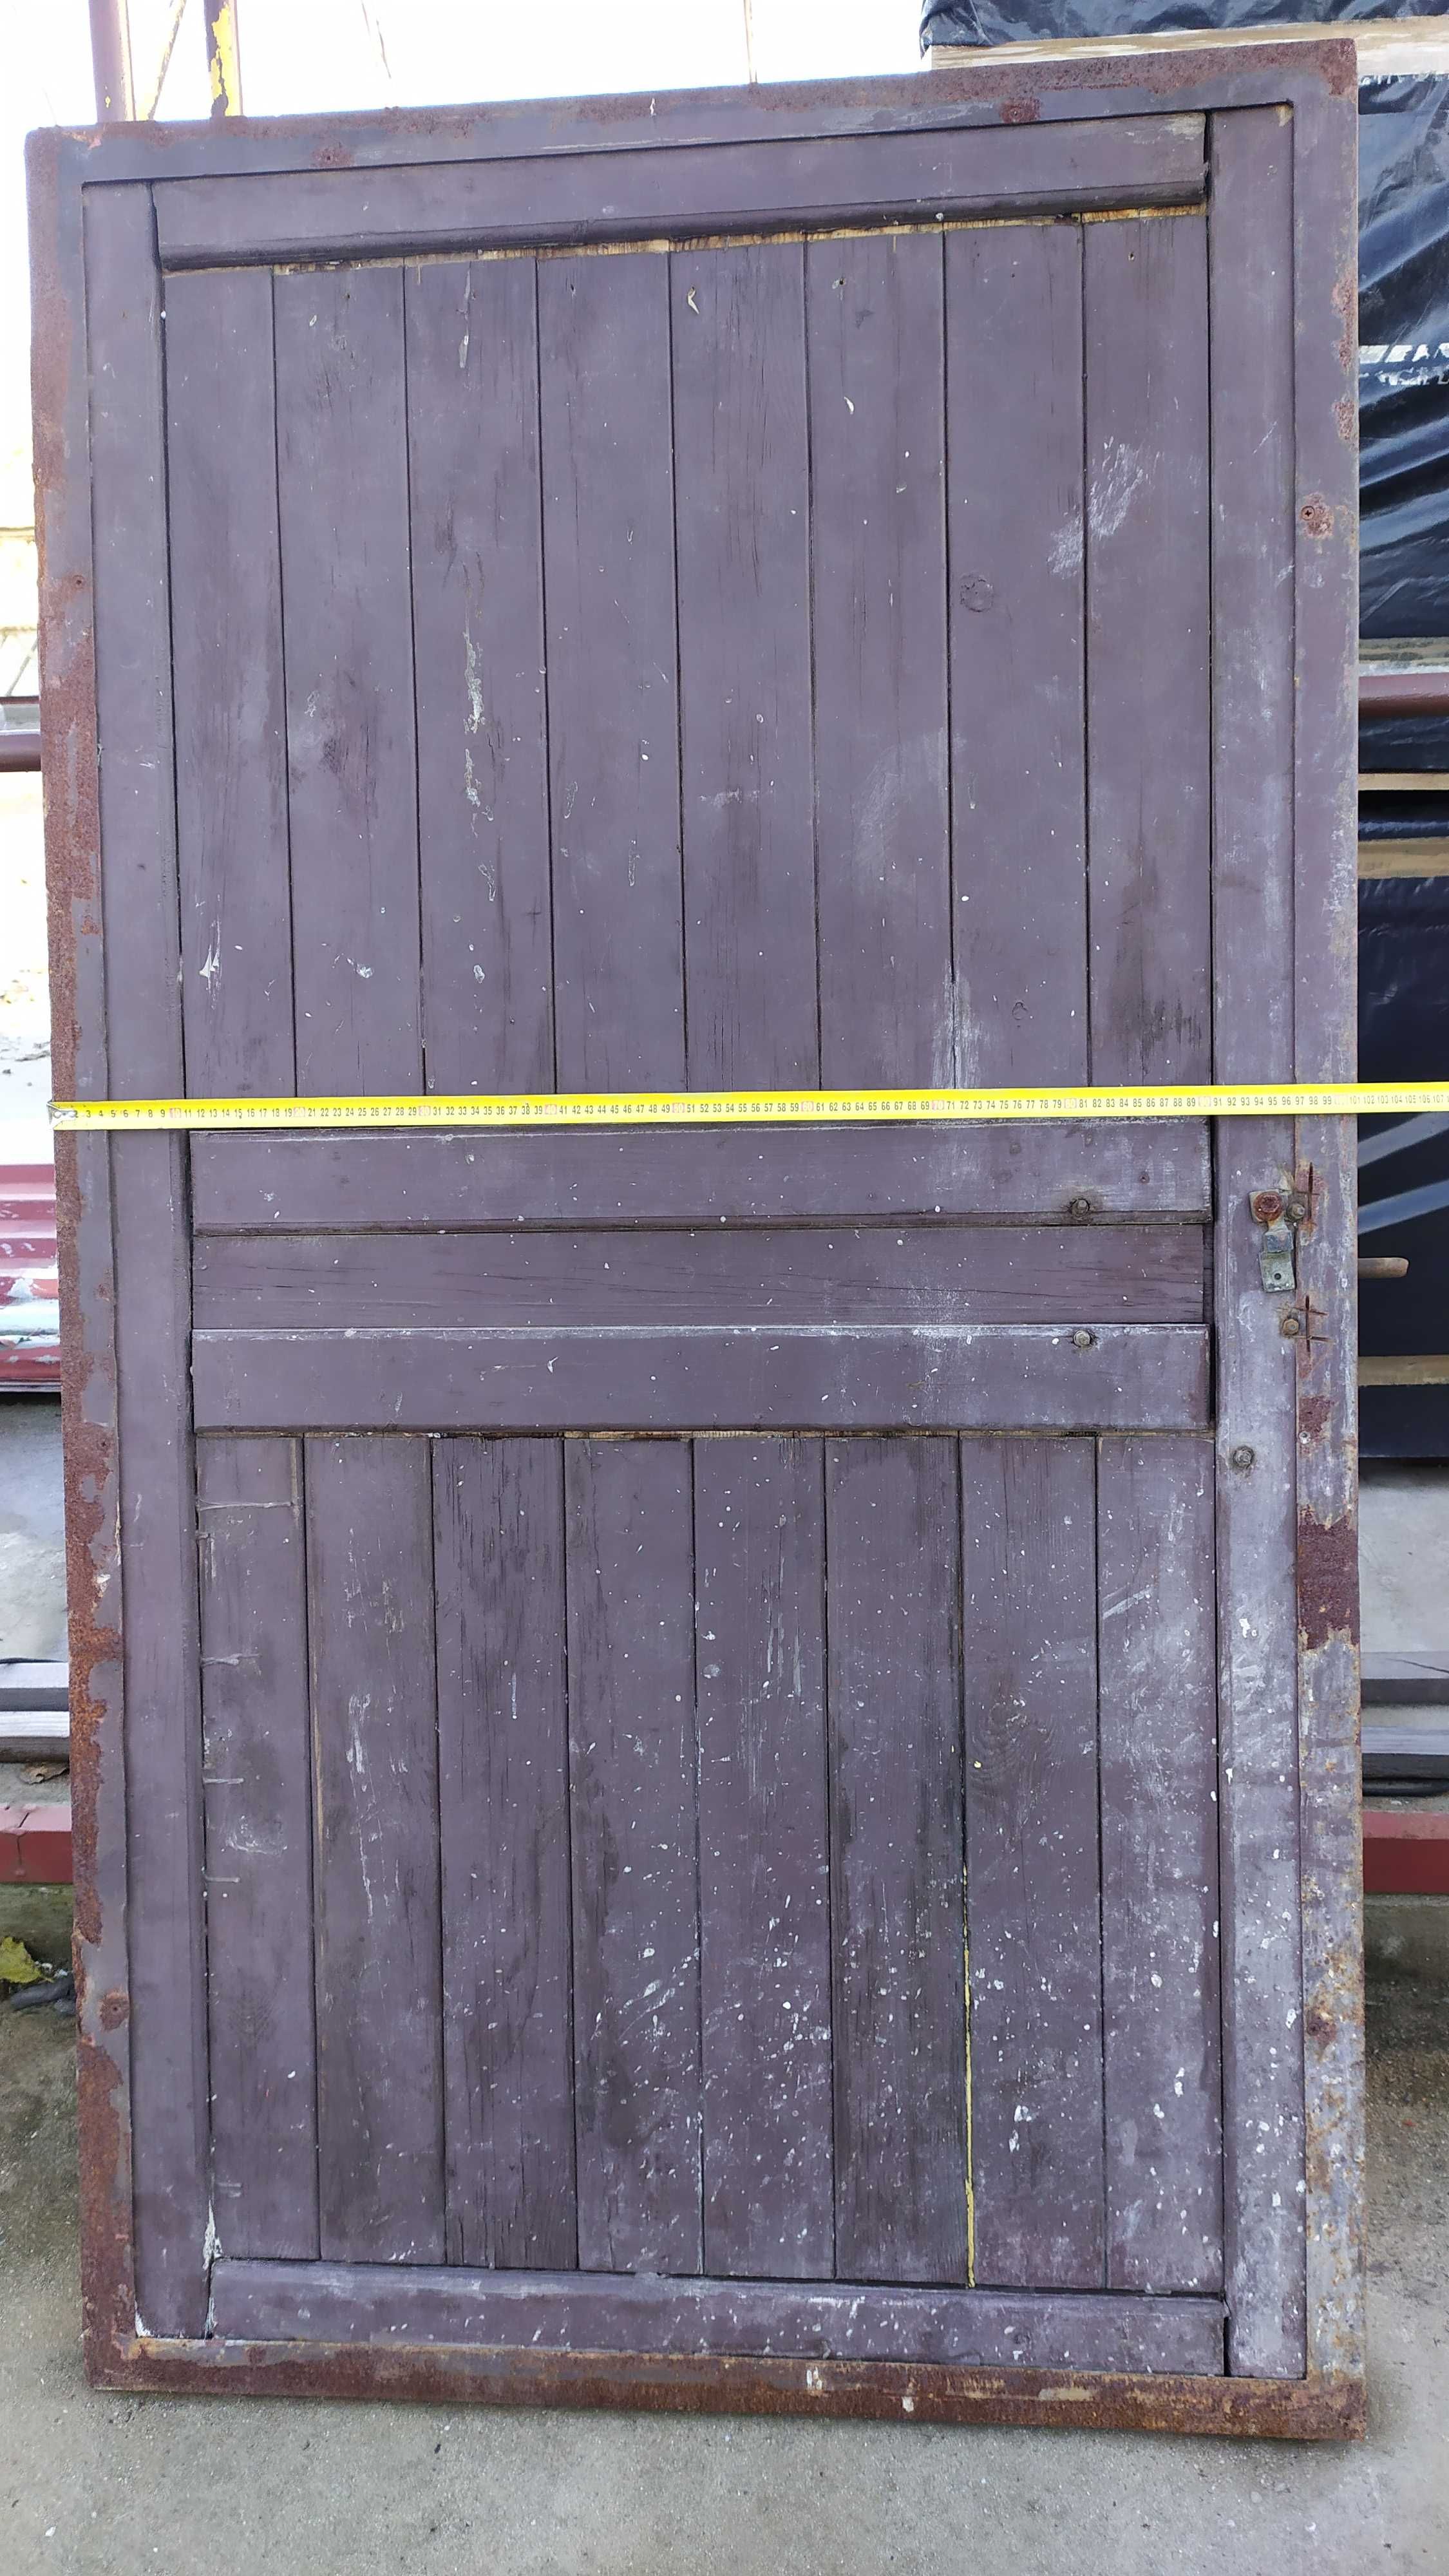 Brama Garaż Drzwi skrzydła demontaż odzysk używana drewno 2X2 używana